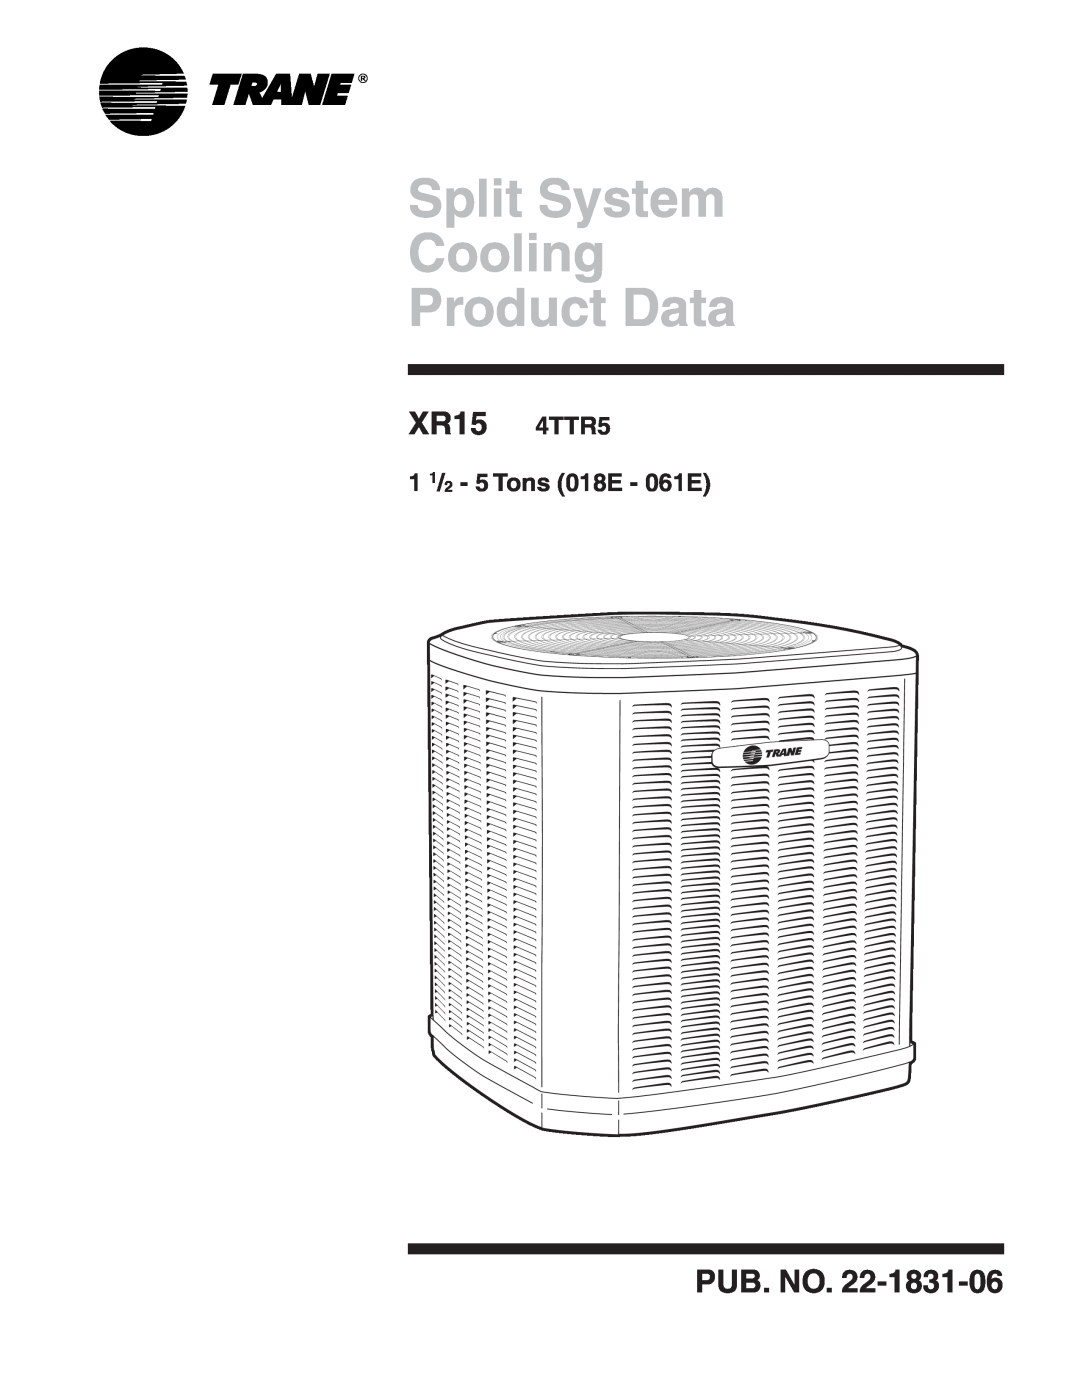 Trane manual Split System Cooling Product Data, XR15 4TTR5, Pub. No, 1 1/2 - 5 Tons 018E - 061E 